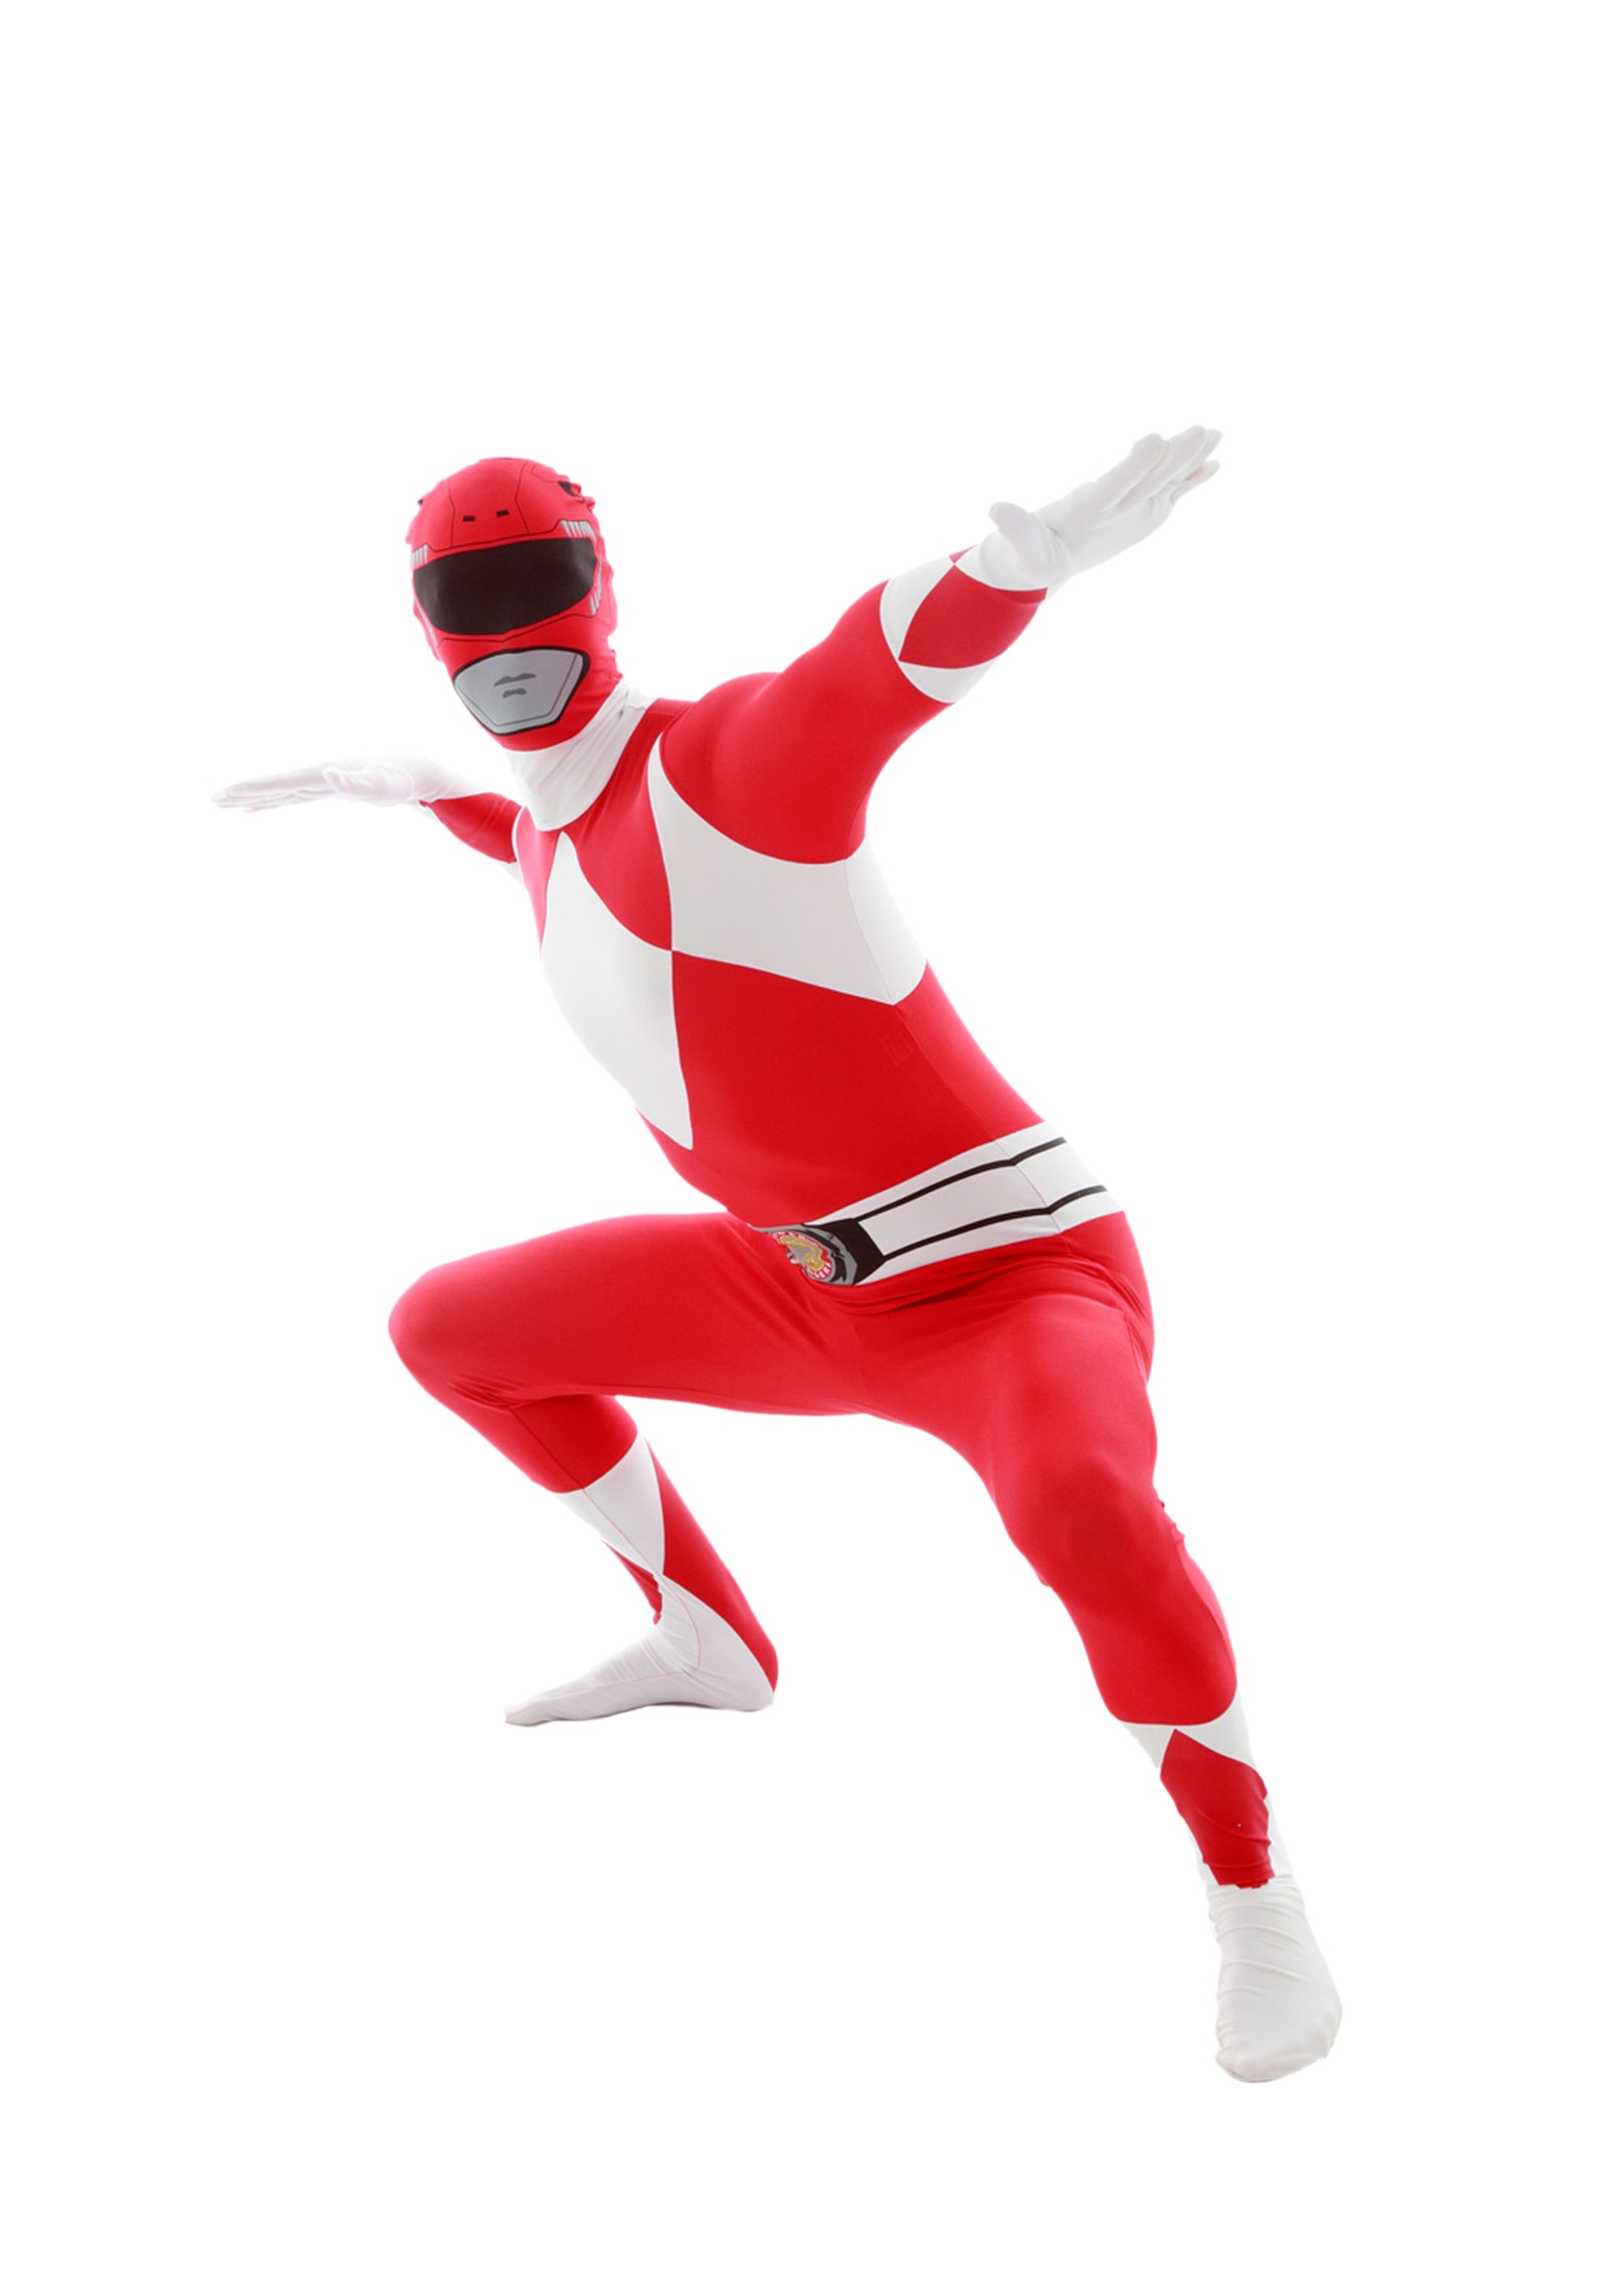 Power Rangers: Red Ranger Morphsuit Fancy Dress Costume